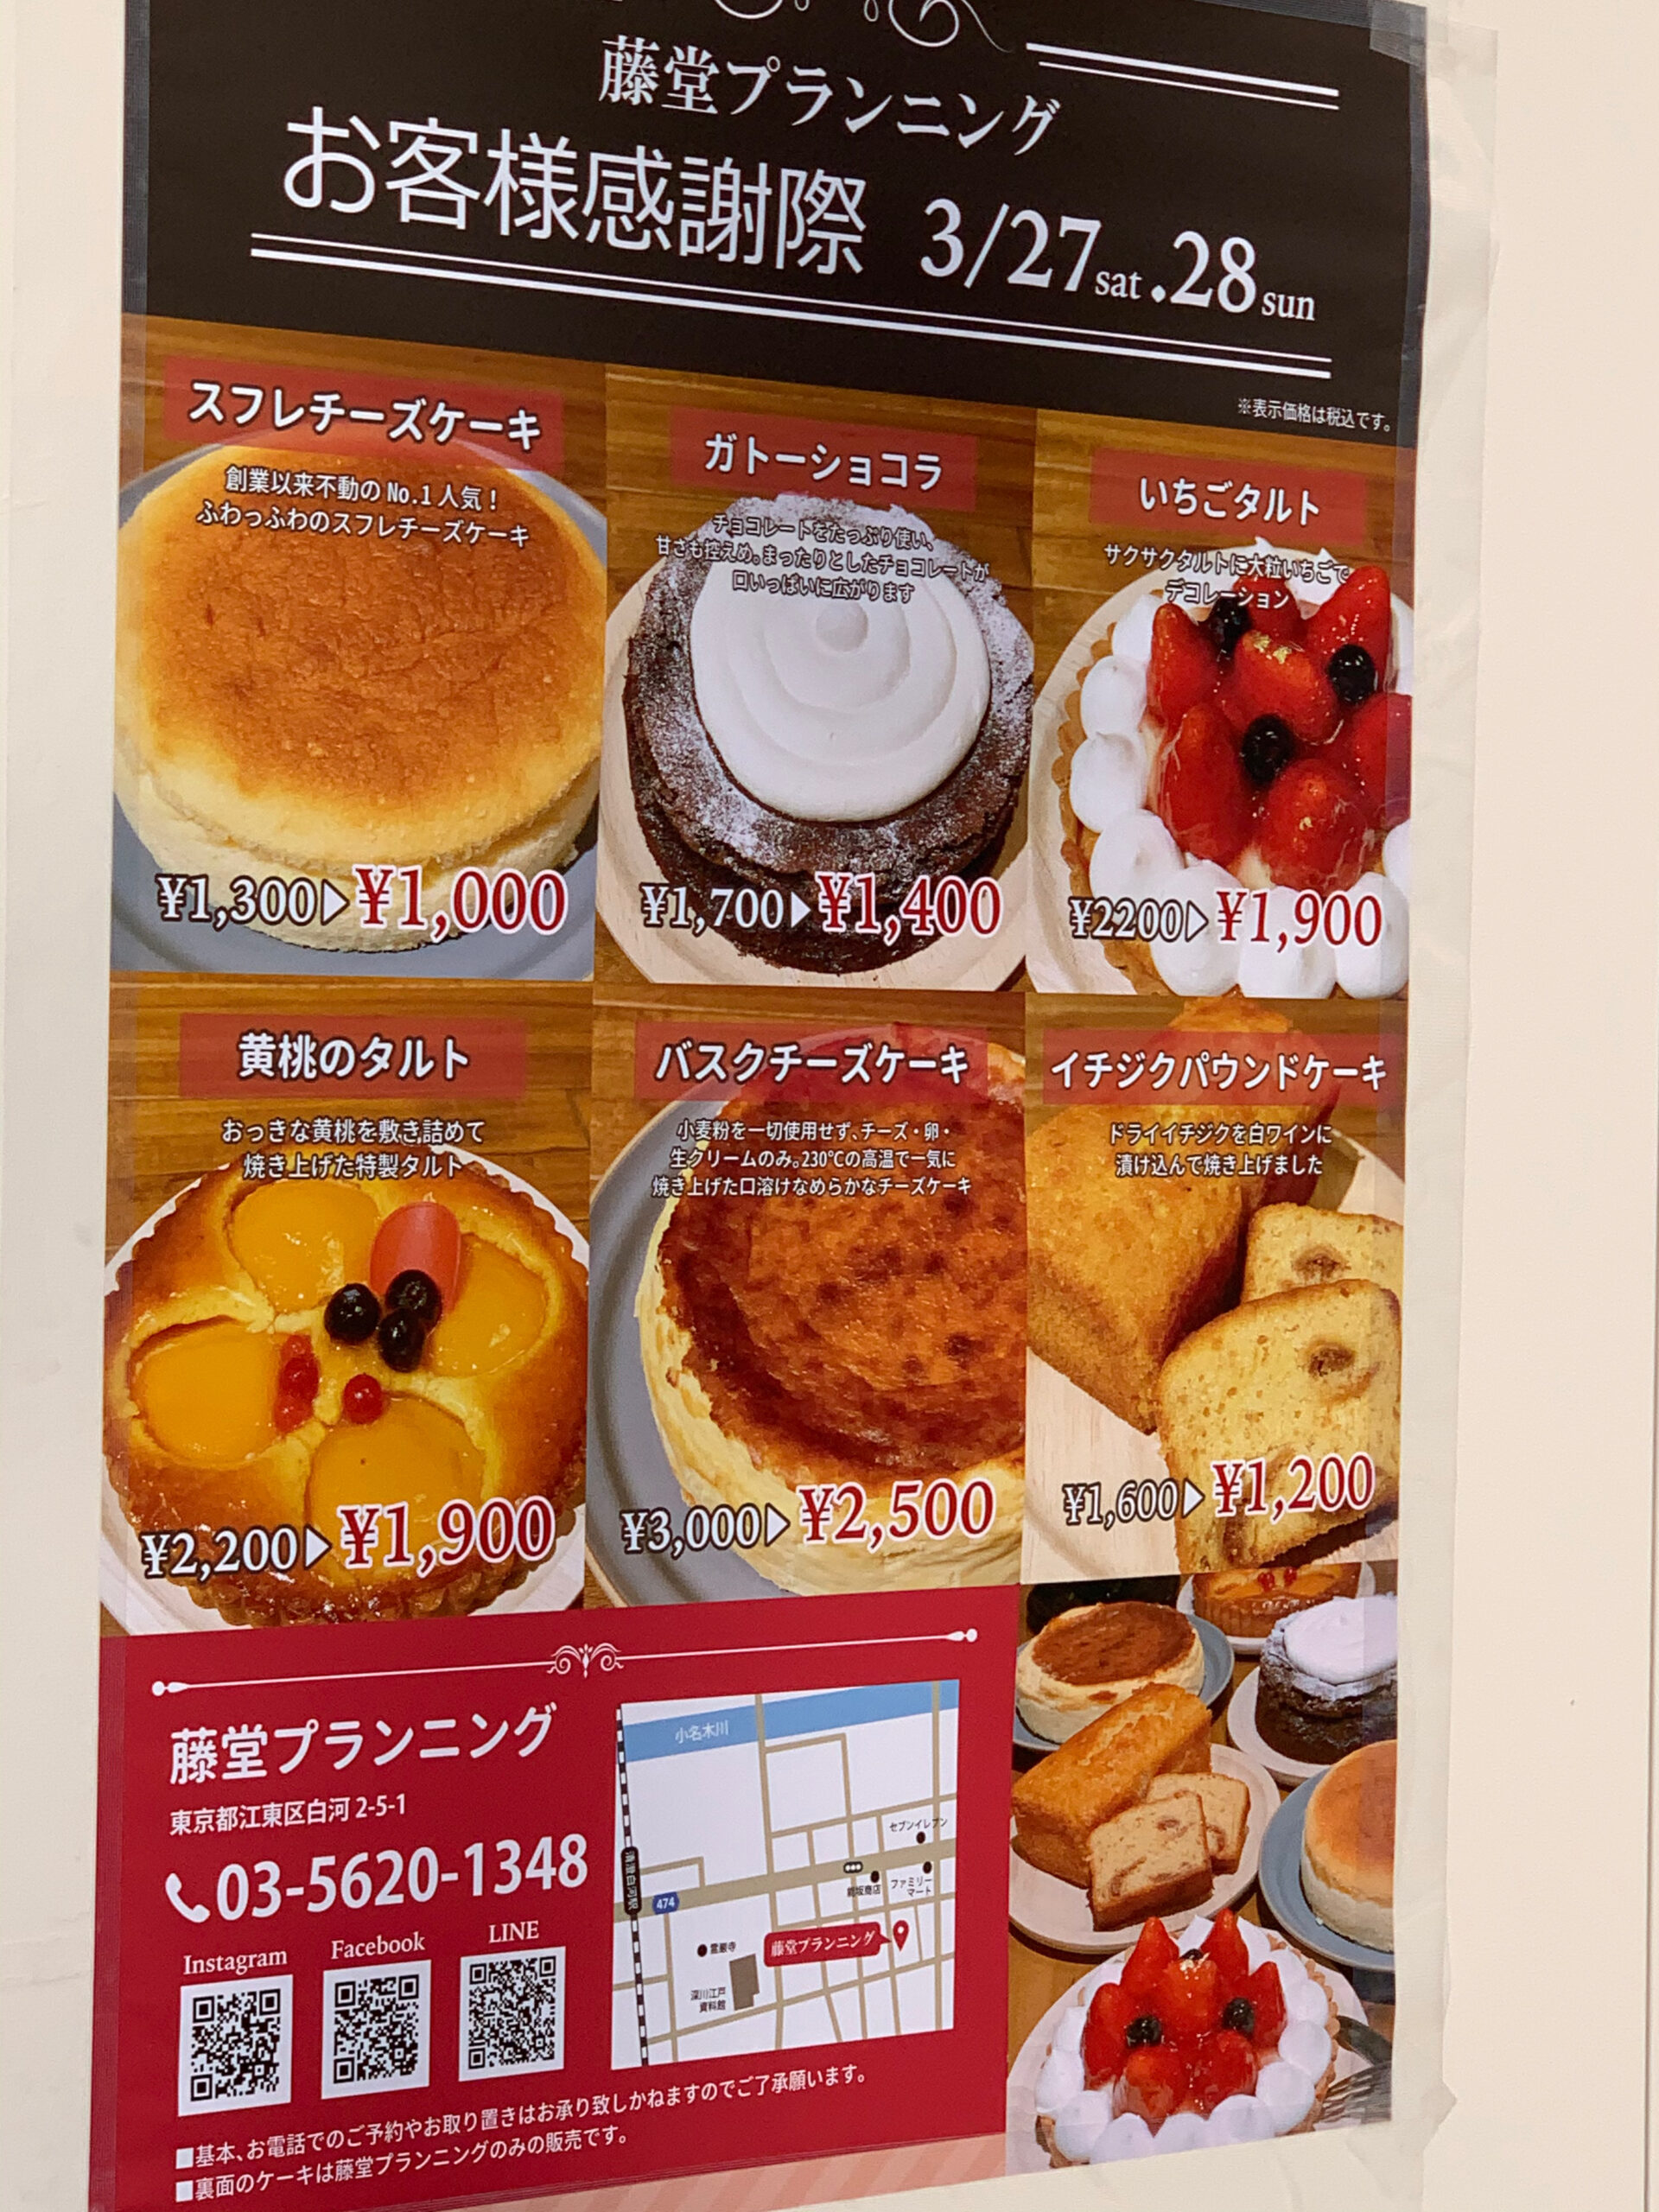 【江東区清澄白河のケーキ工場『藤堂プランニング』】春のお客様感謝セールは本日までです